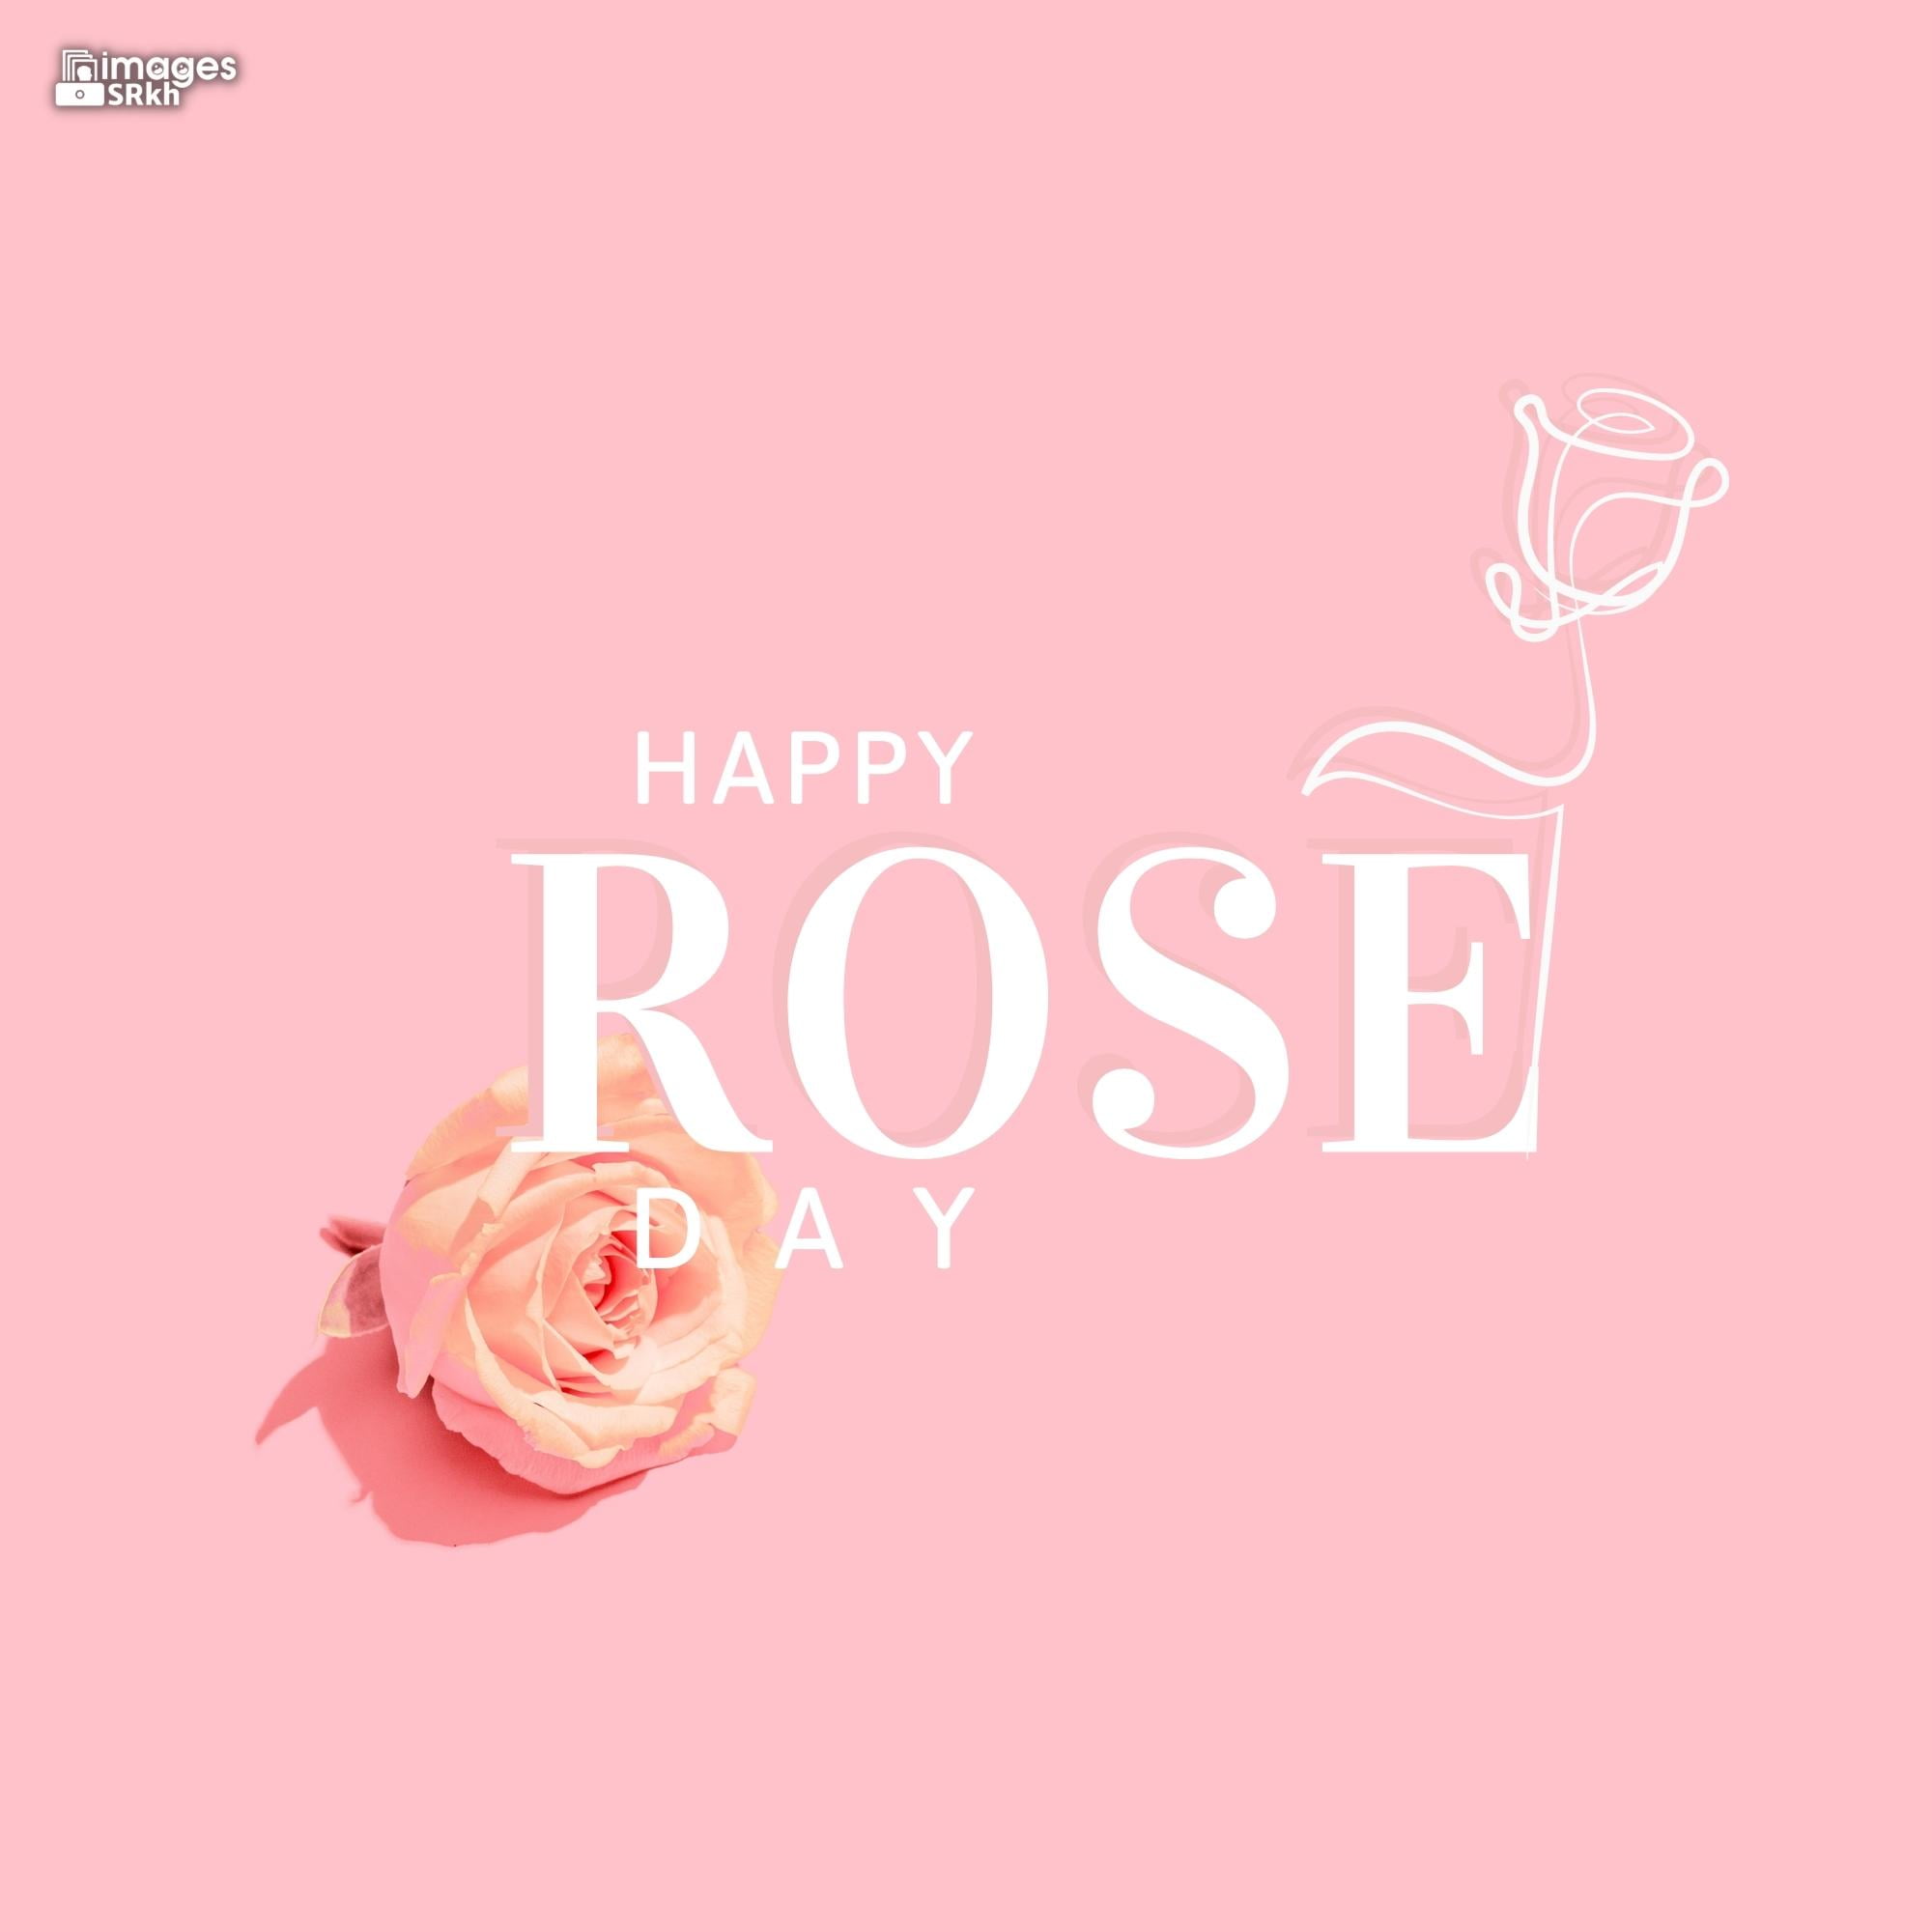 Rose Day Wishing Image Hd Download (22)